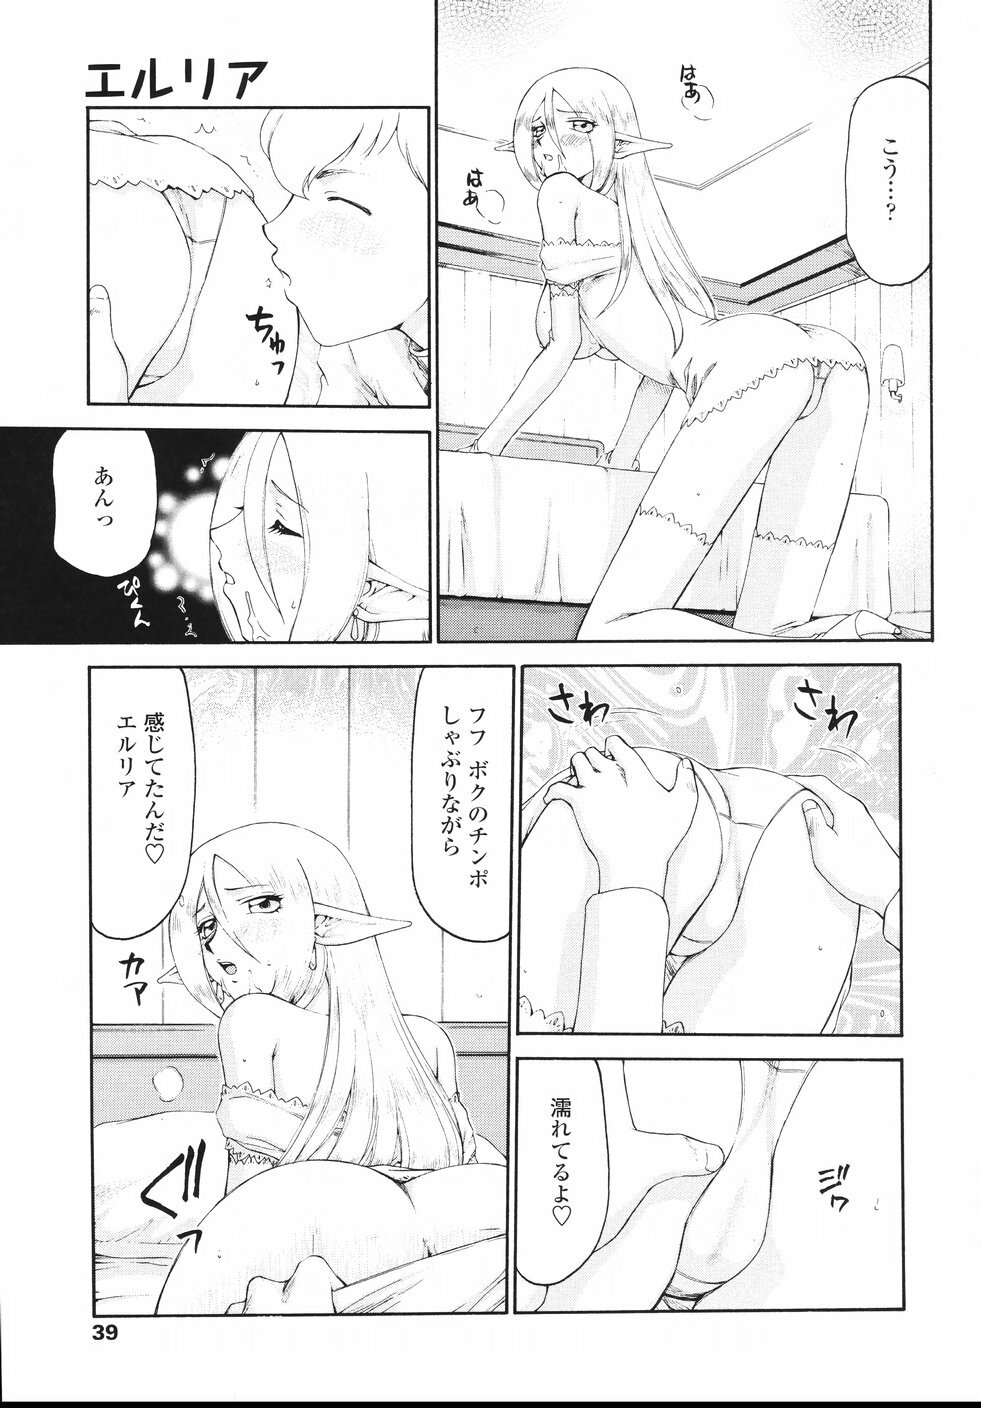 [Taira Hajime] Eruria page 42 full